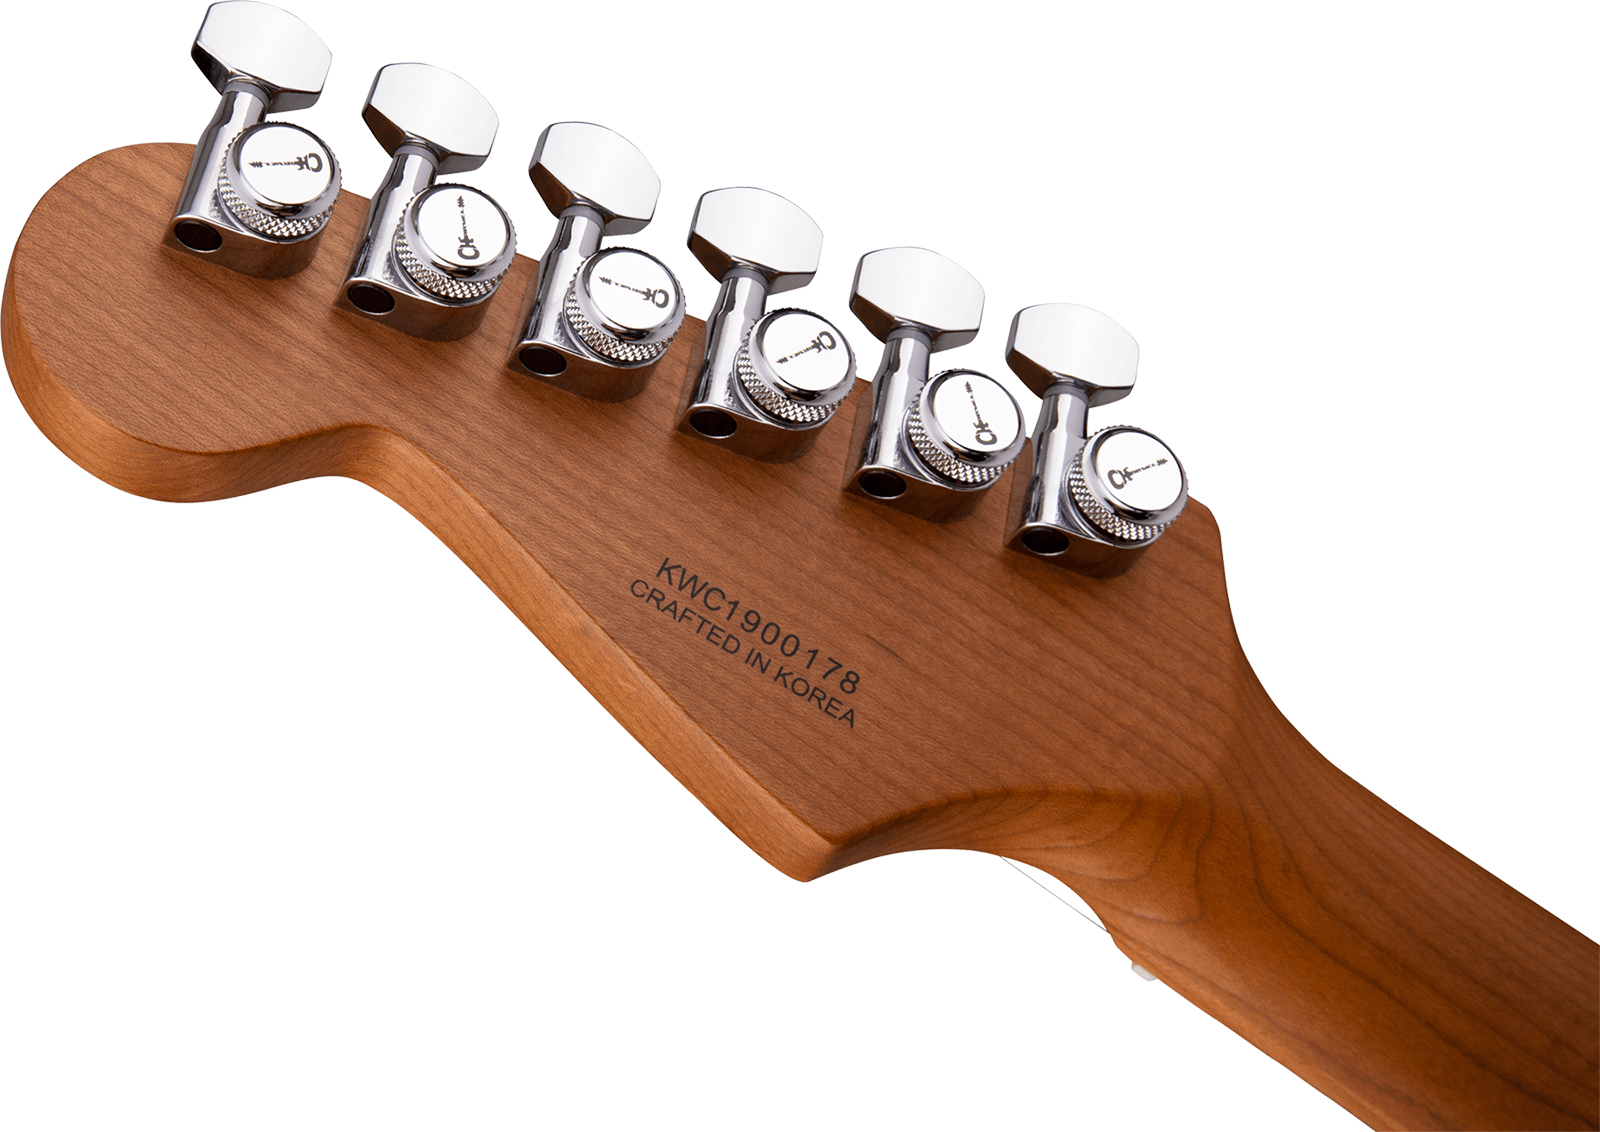 Charvel Dinky Dk24 Hss 2pt Cm Ash Pro-mod Seymour Duncan Trem Mn - Red Ash - Str shape electric guitar - Variation 3